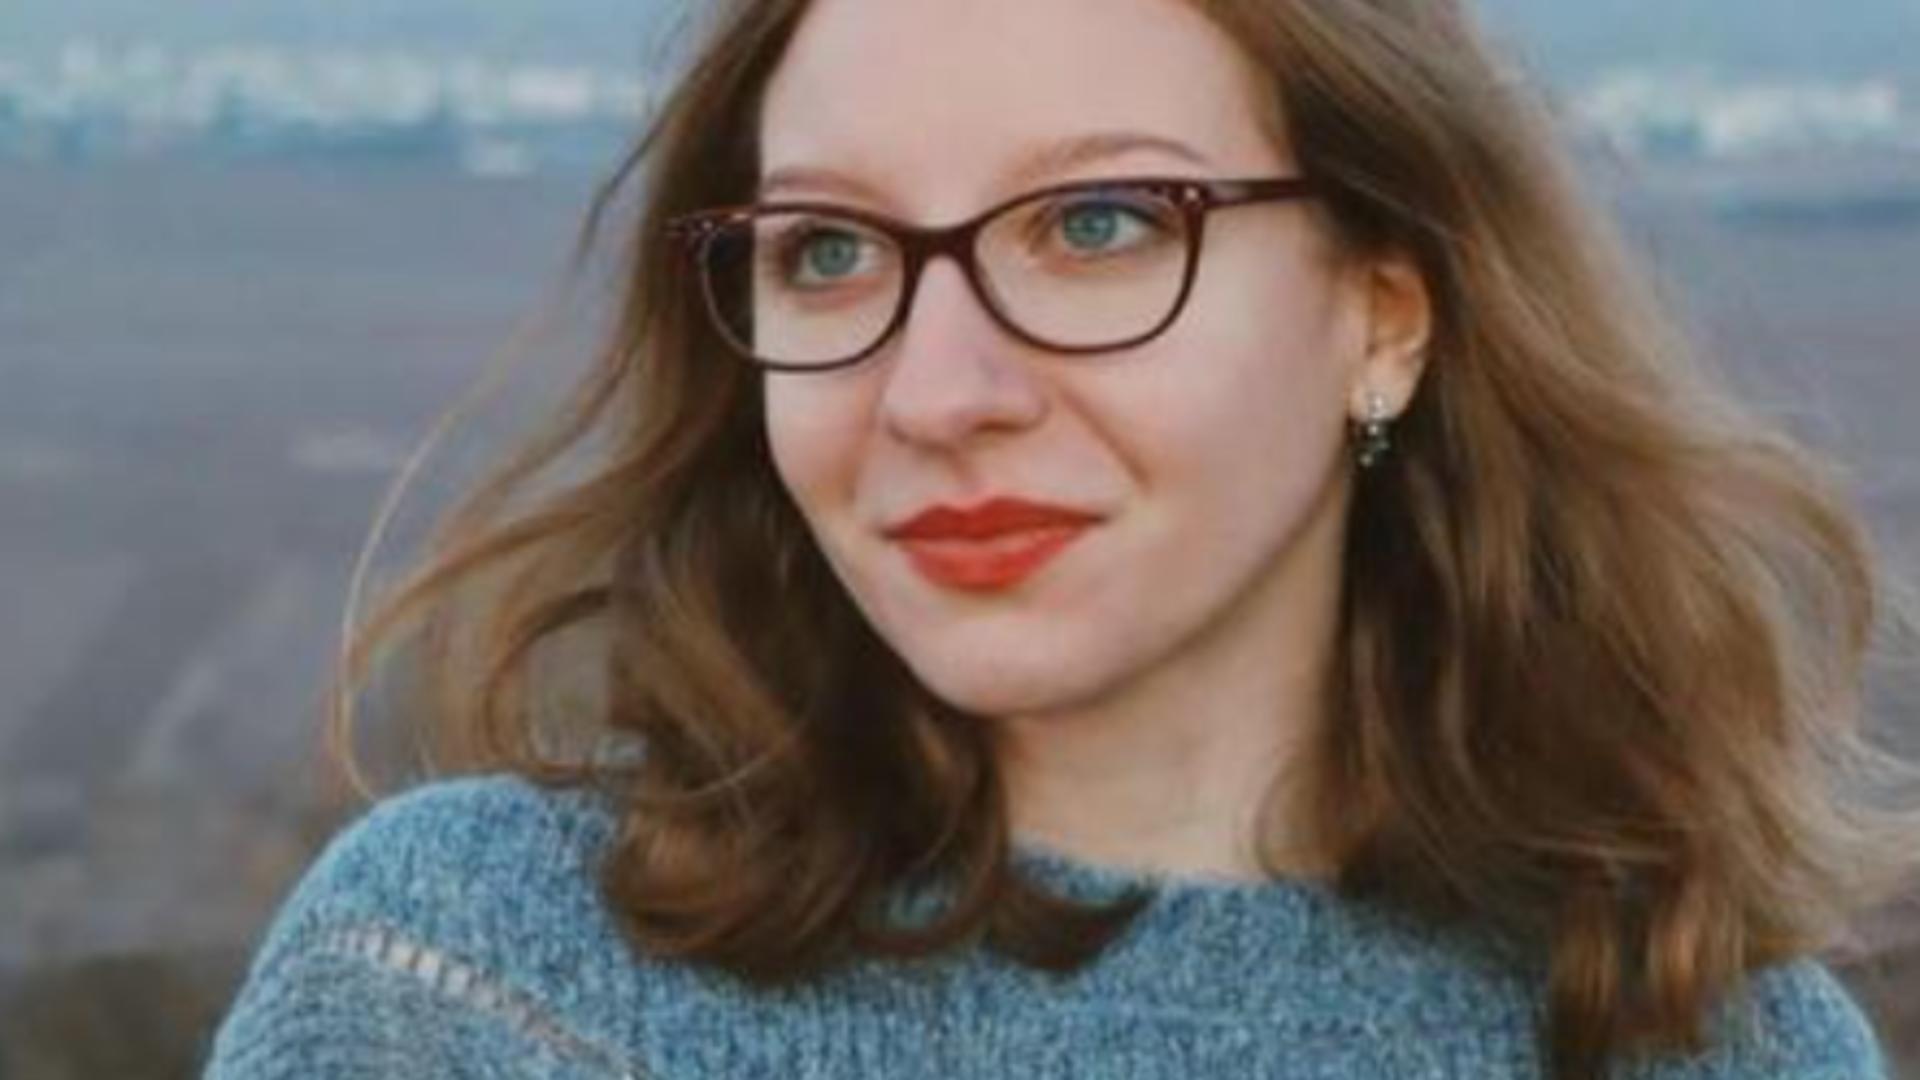 Mobilizare impresionantă pe rețelele de socializare pentru găsirea unei tinere din Cluj, date dispărută: Fiecare ochi și pas contează